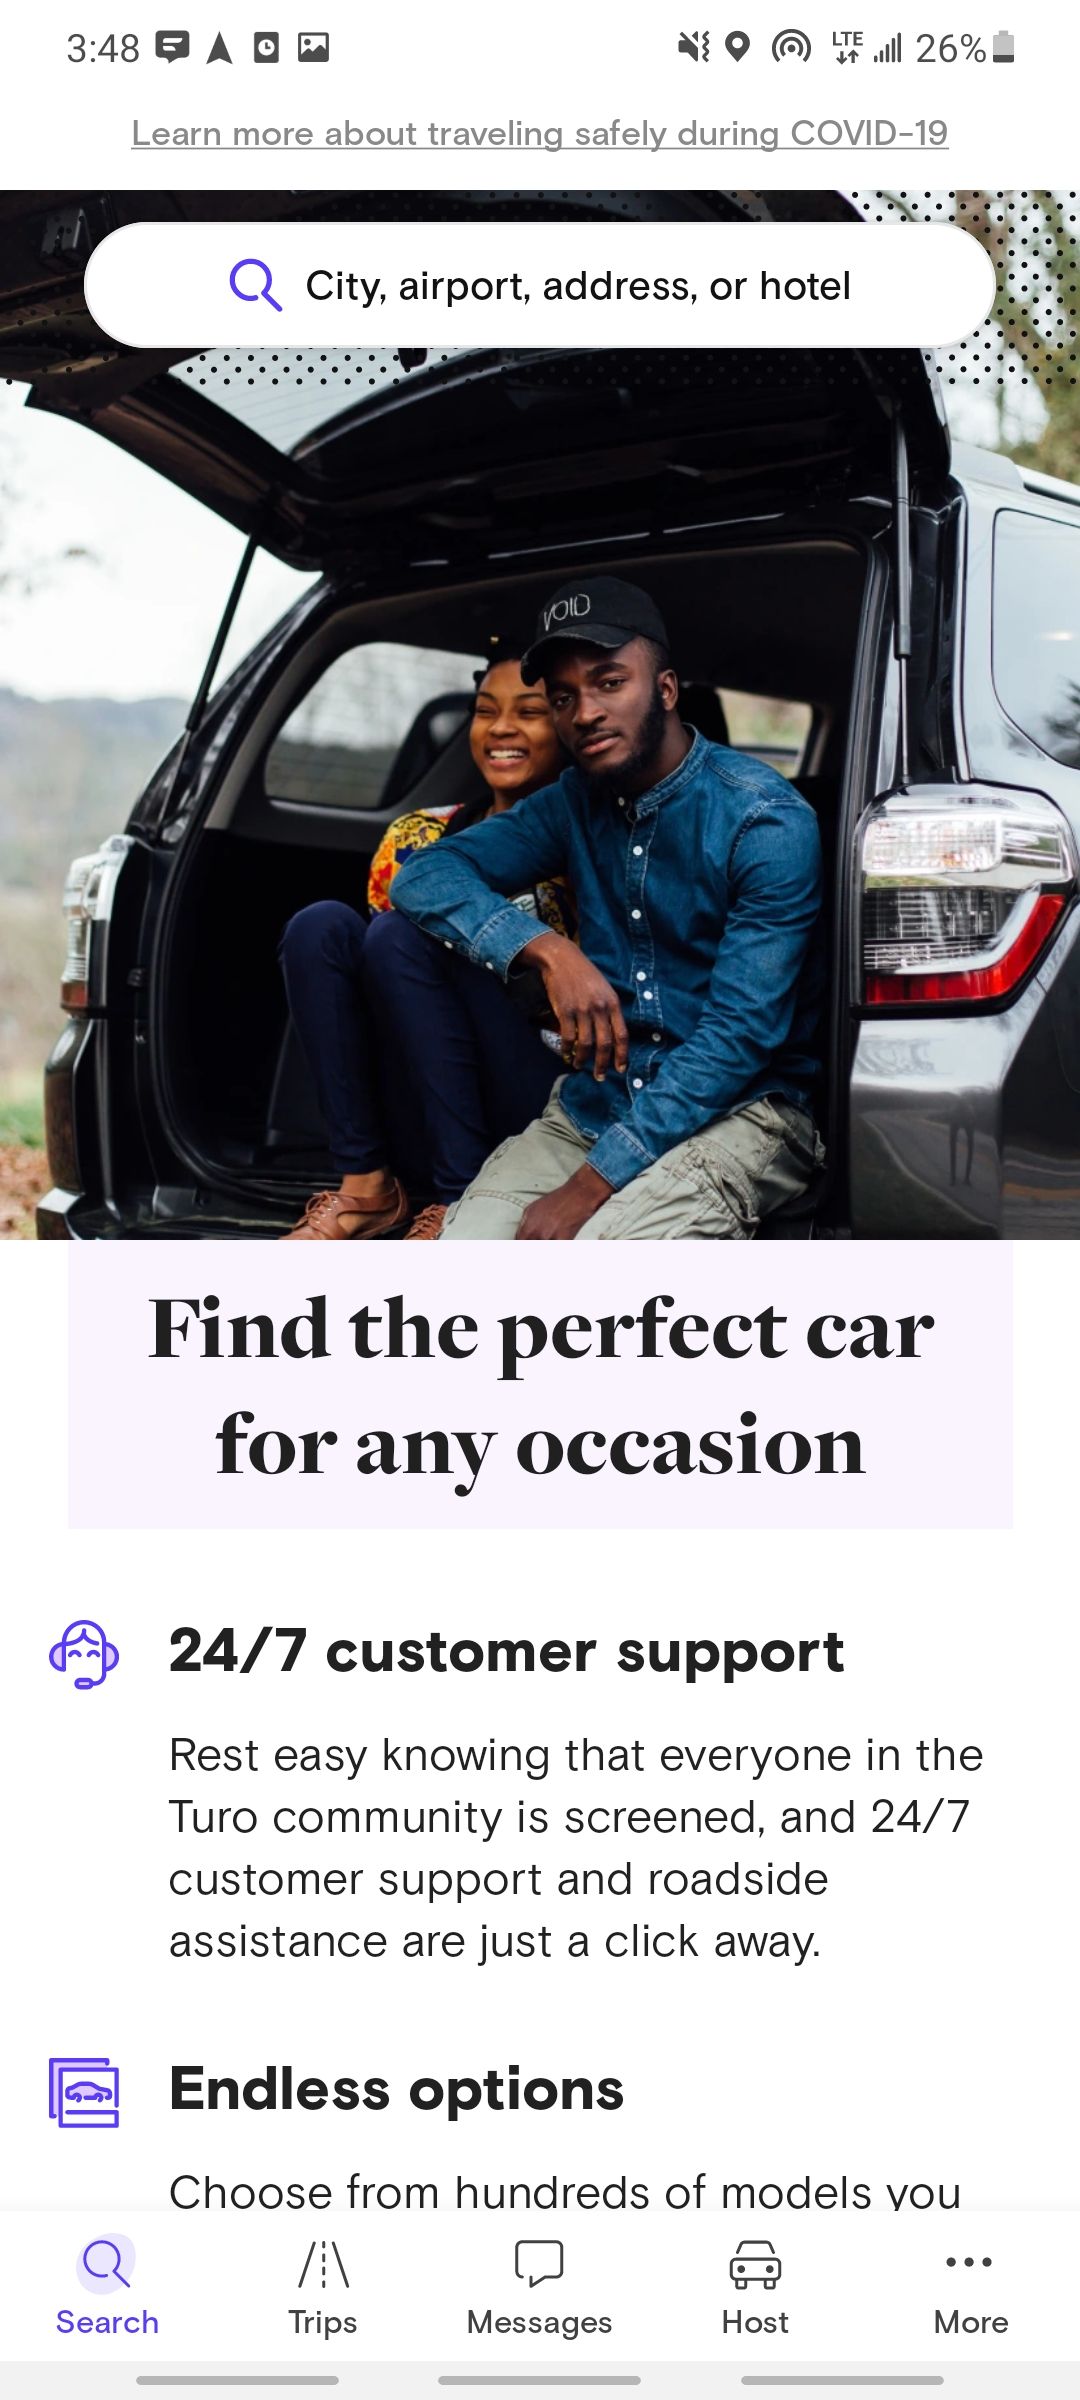 turo car rental app home screen